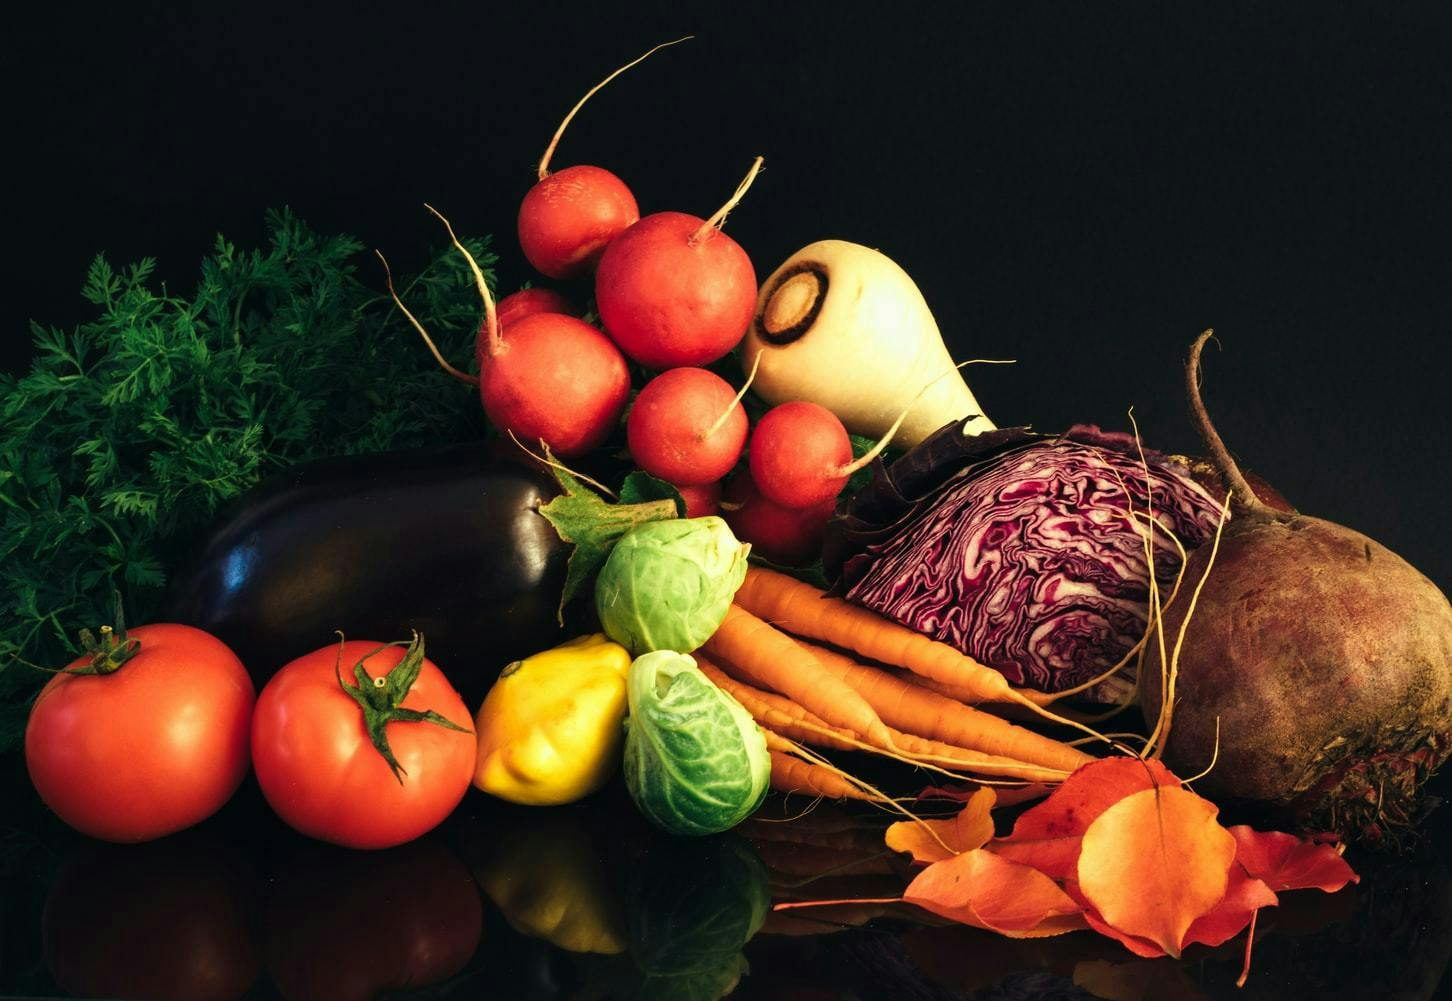 plant vegetable food produce